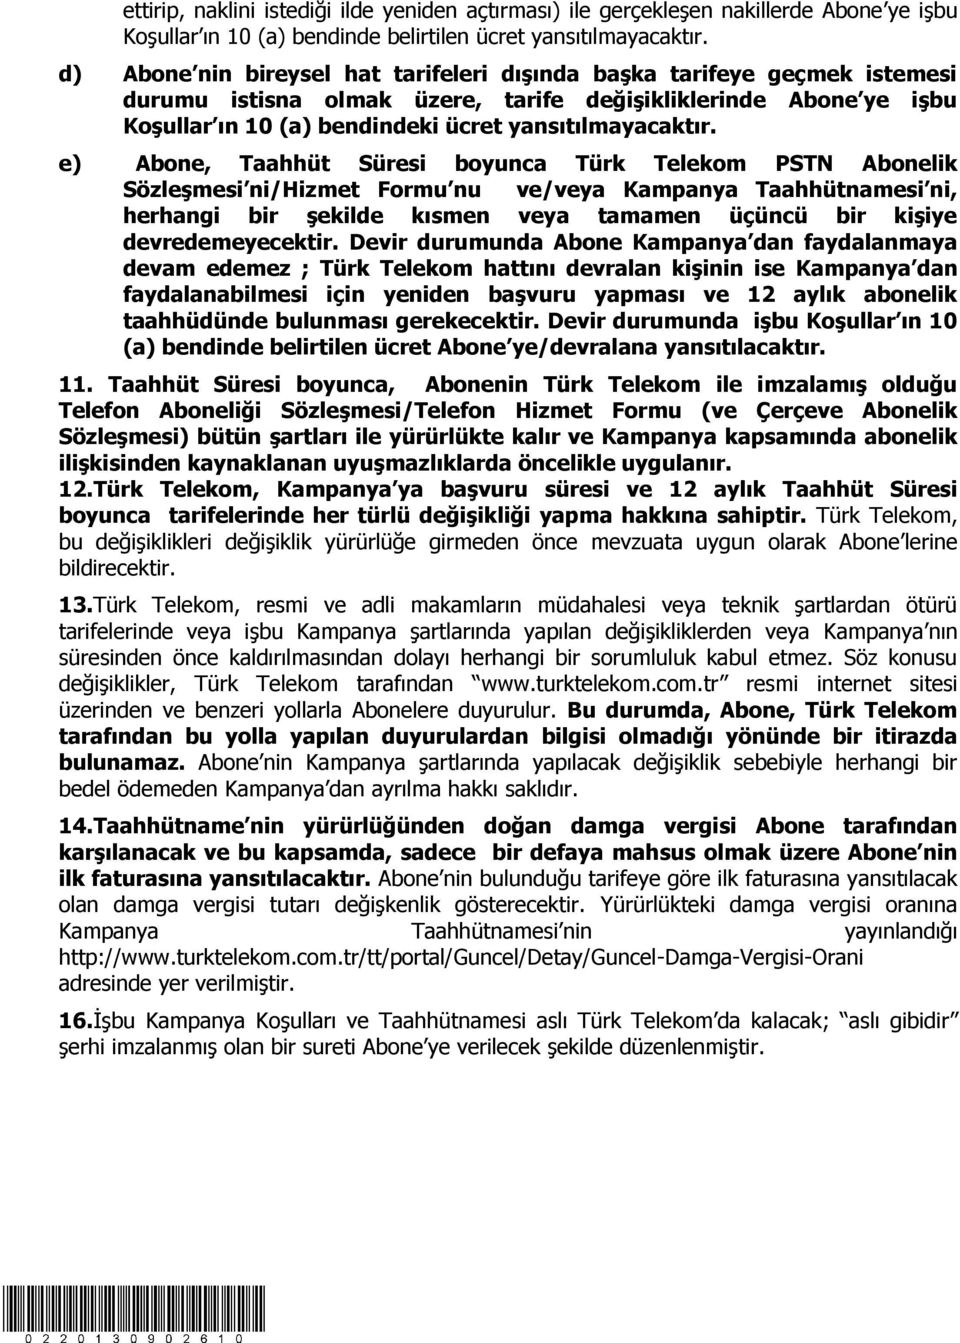 e) Abone, Taahhüt Süresi boyunca Türk Telekom PSTN Abonelik Sözleşmesi ni/hizmet Formu nu ve/veya Kampanya Taahhütnamesi ni, herhangi bir şekilde kısmen veya tamamen üçüncü bir kişiye